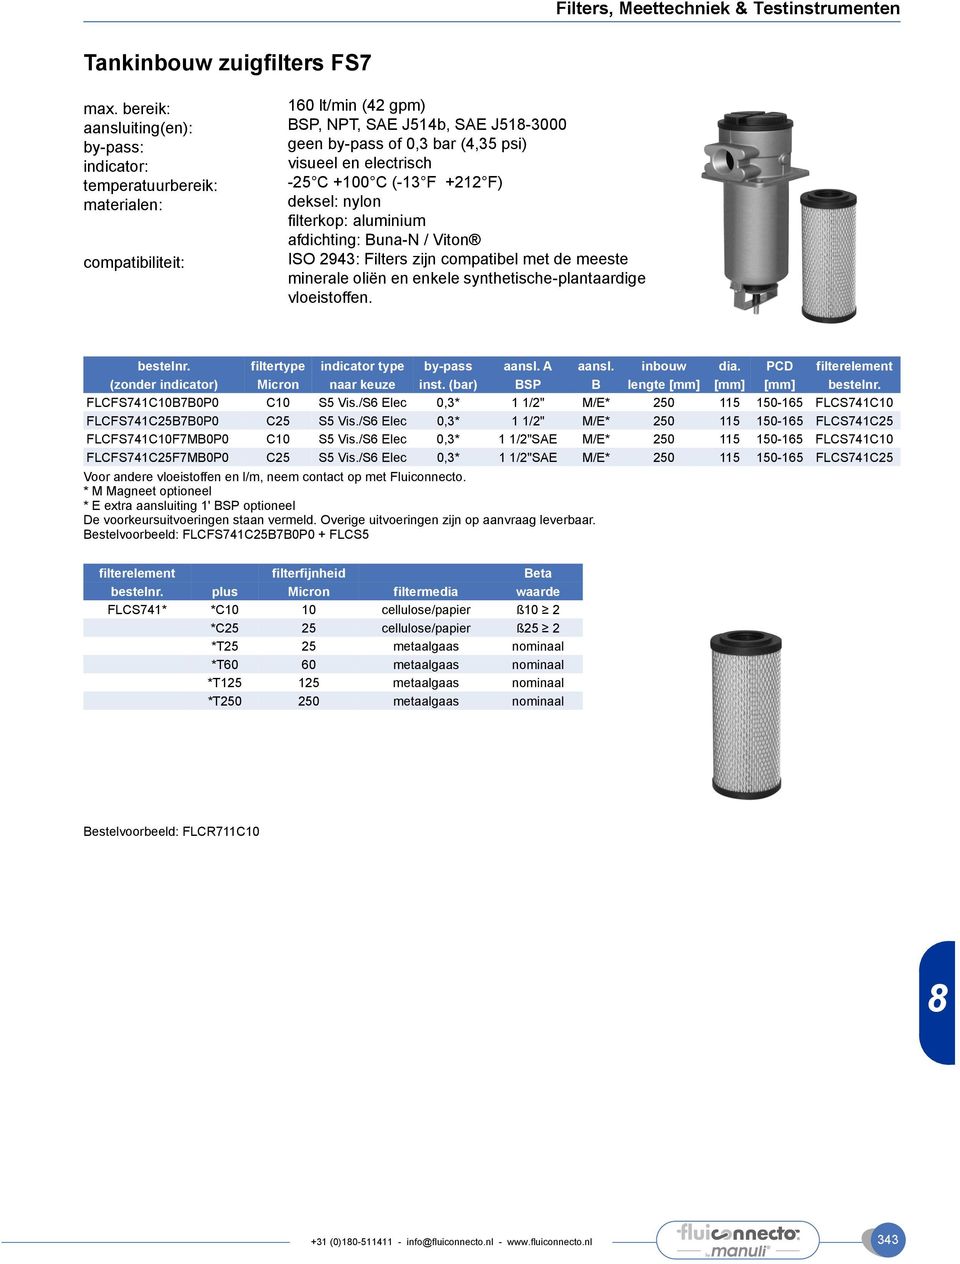 (-13 F +212 F) deksel: nylon filterkop: aluminium afdichting: Buna-N / Viton ISO 2943: Filters zijn compatibel met de meeste minerale oliën en enkele synthetische-plantaardige vloeistoffen. bestelnr.